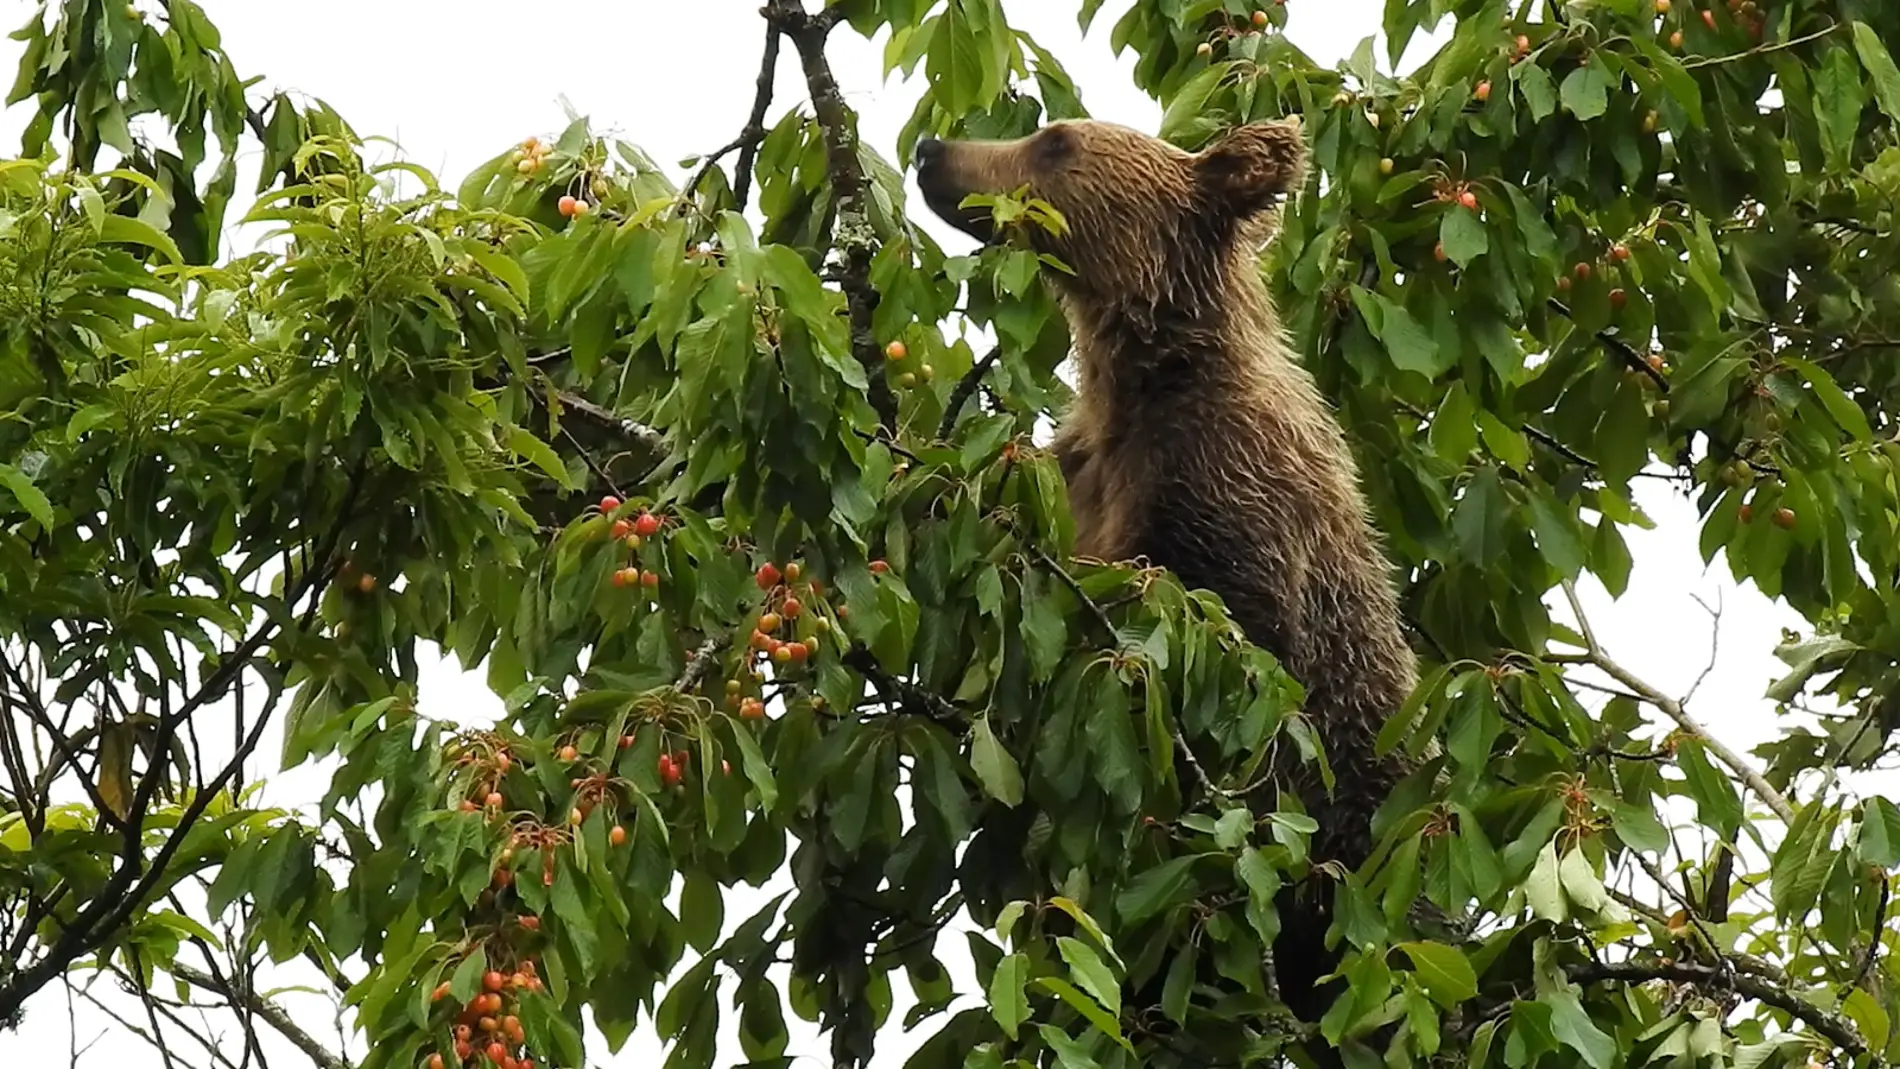 El cambio climático propiciará más cerezos silvestres que alimentarán a los osos pardos